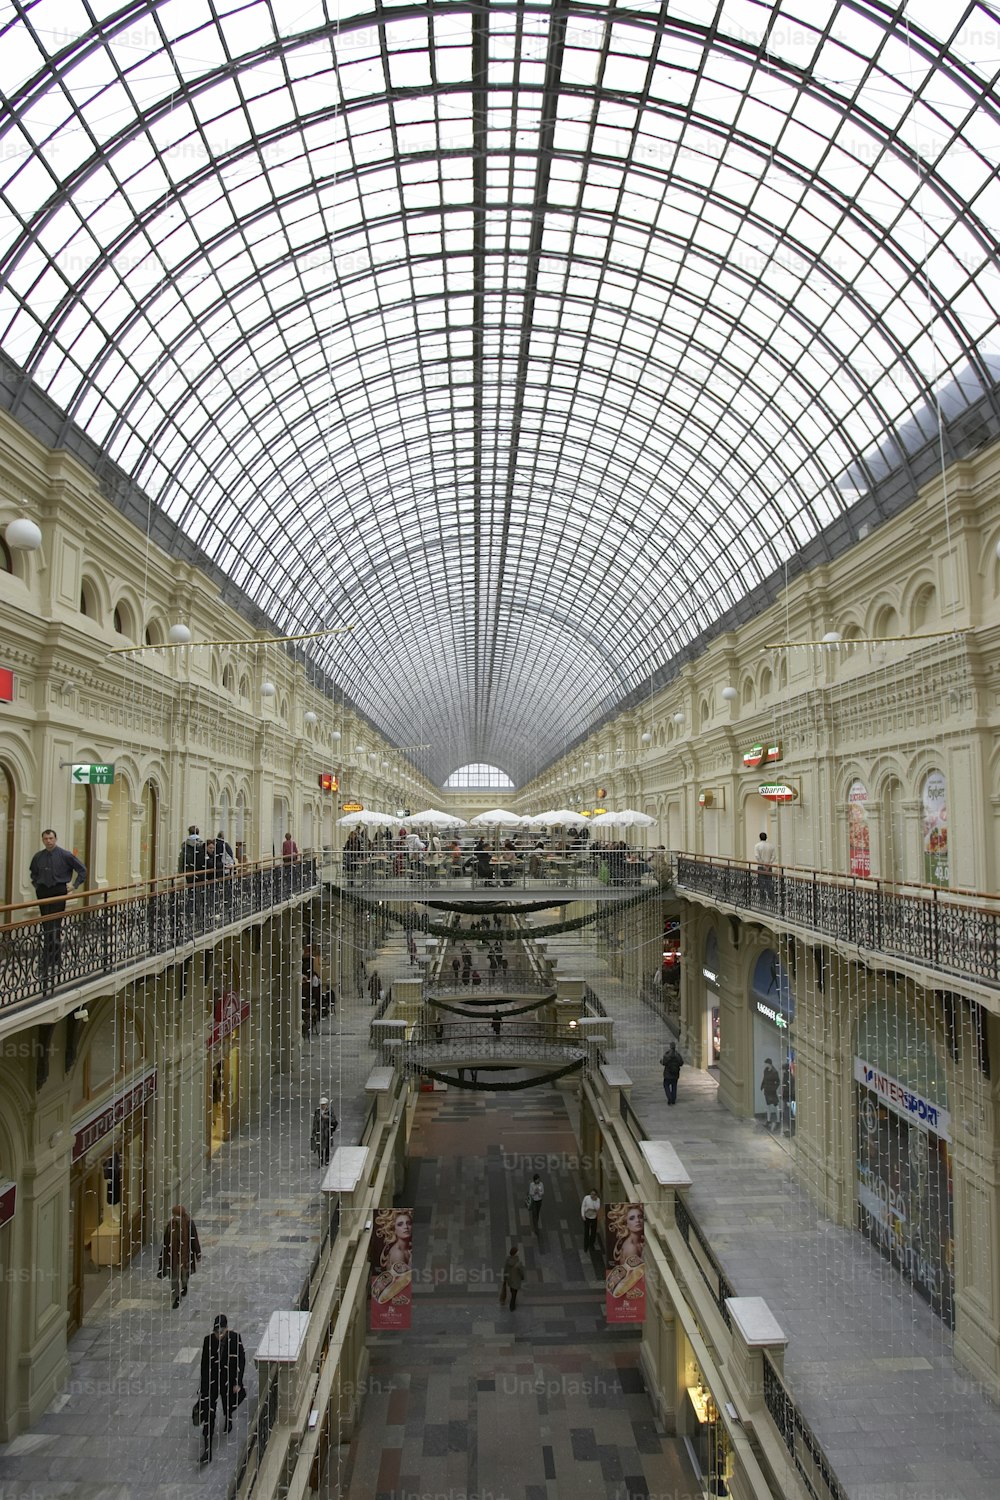 La gran tienda en Kitai-gorod de Moscú, frente a la Plaza Roja. Rodada en 2007.